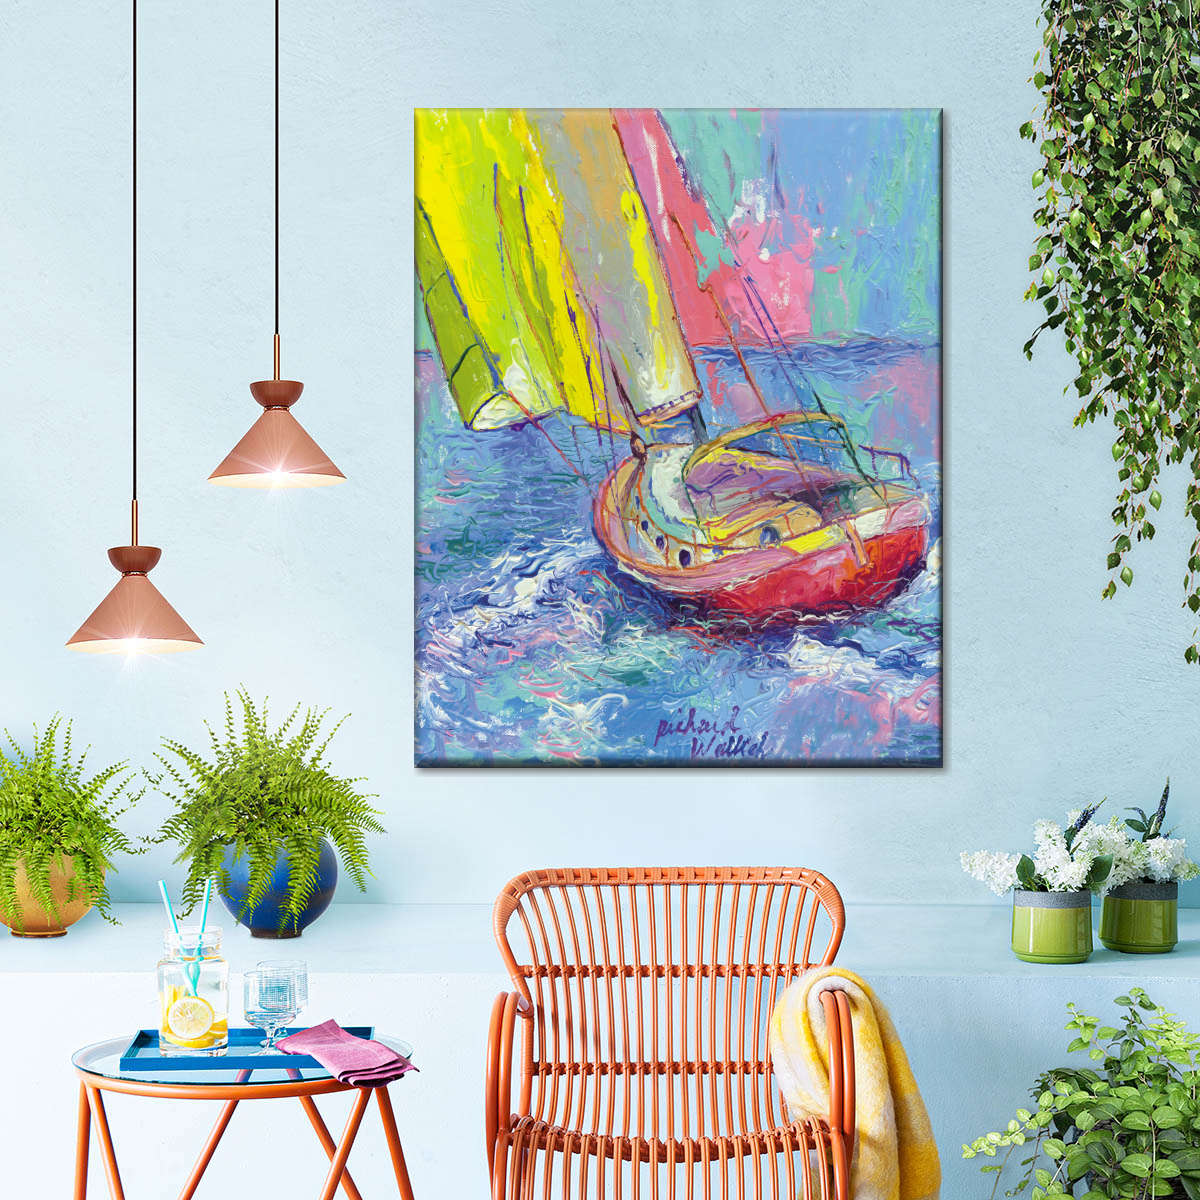 colorful sailboat wall decor